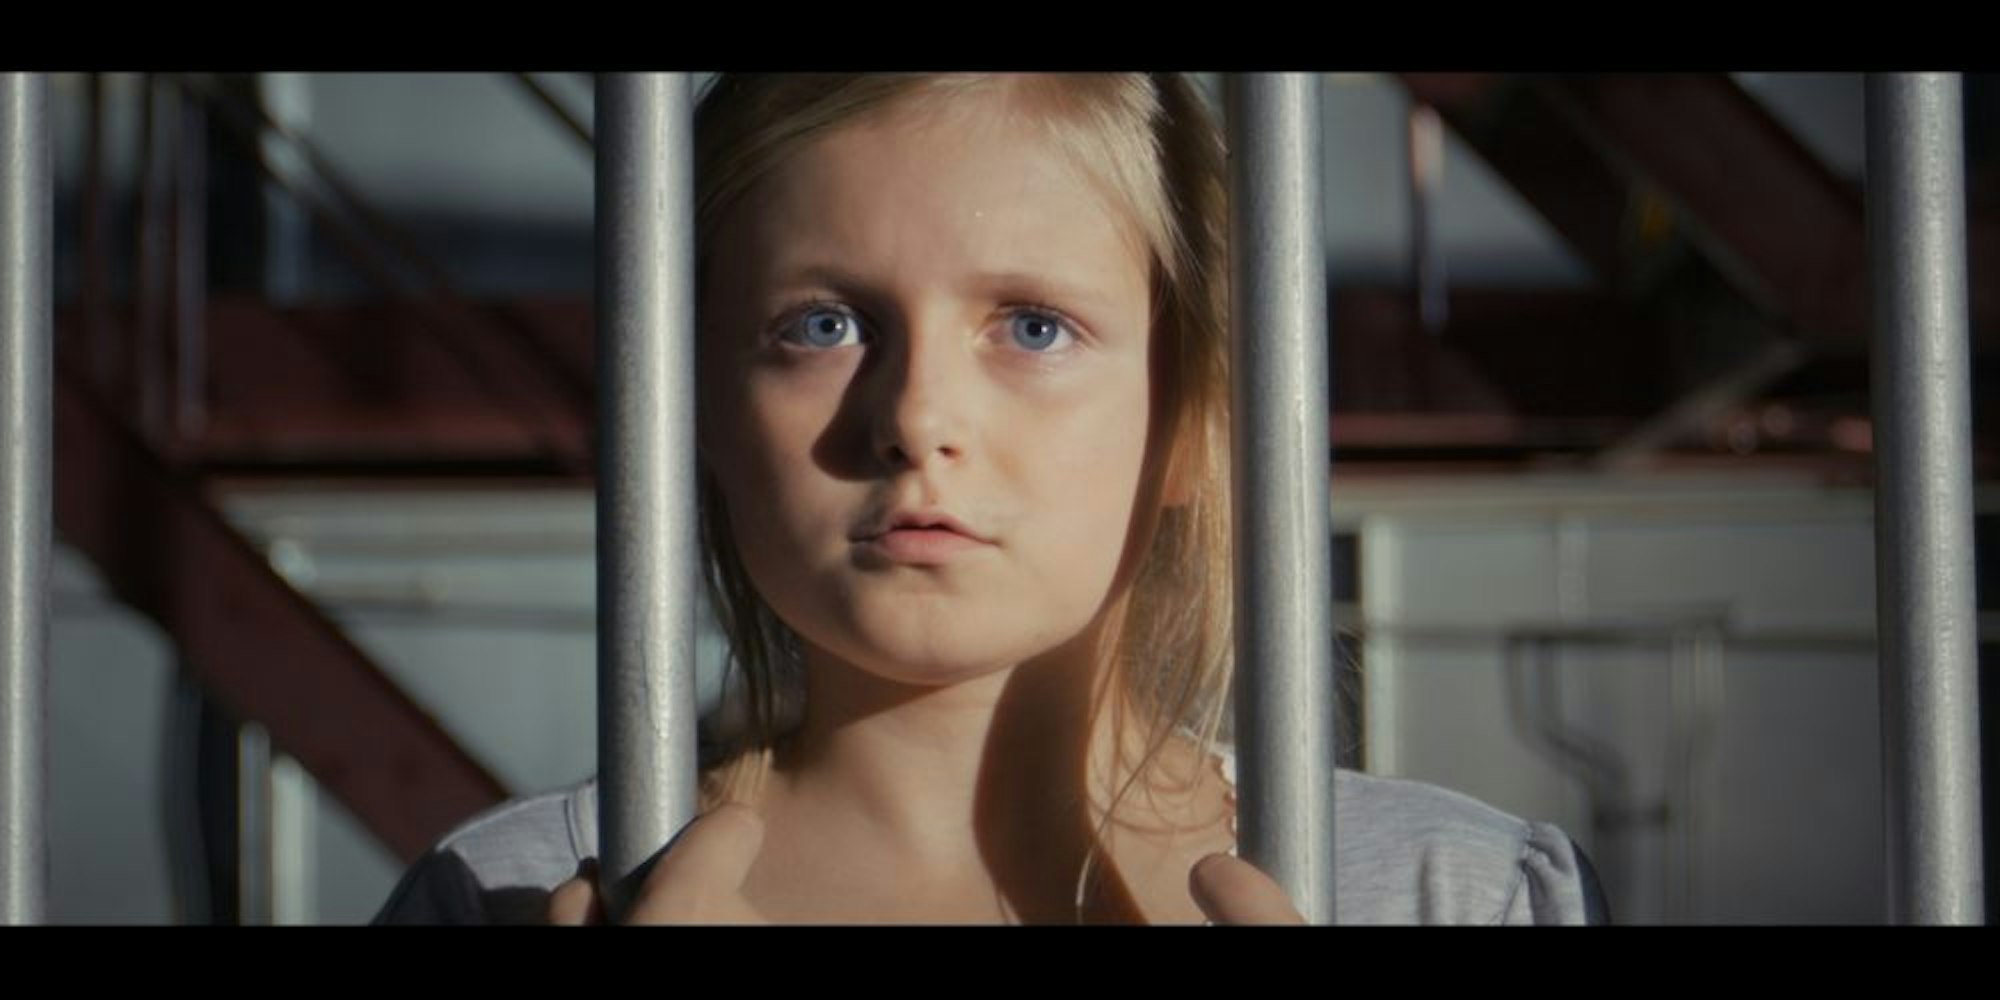 Die Kinderschauspielerin im neuen Kidkit-Video ist hinter Gitterstäben gefangen.